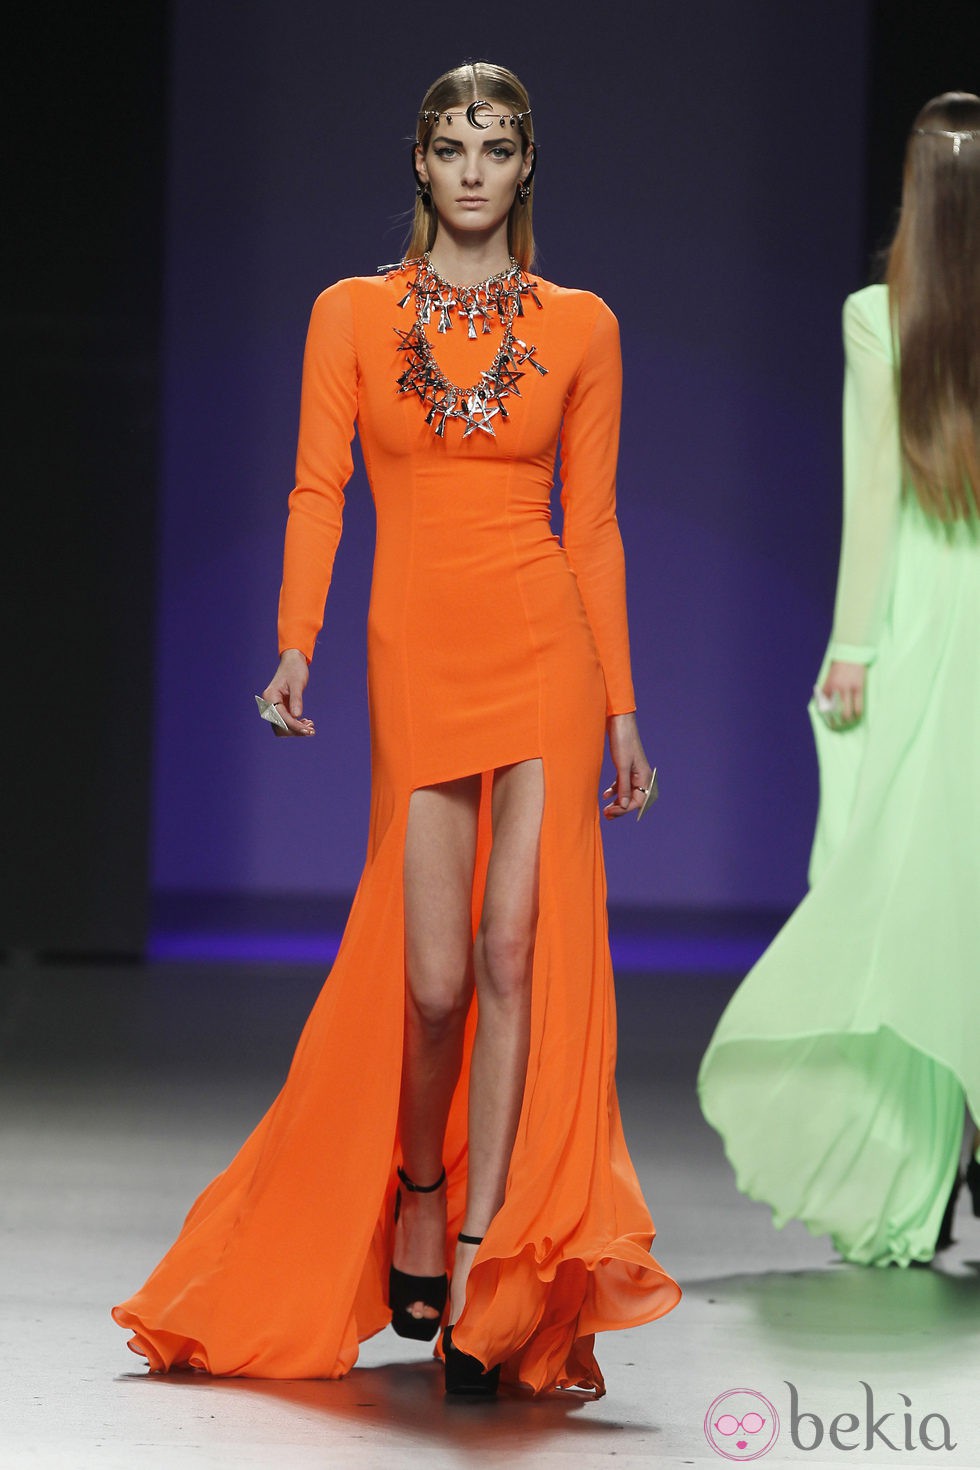 Vestido naranja de María Escoté en Madrid Fashion Week